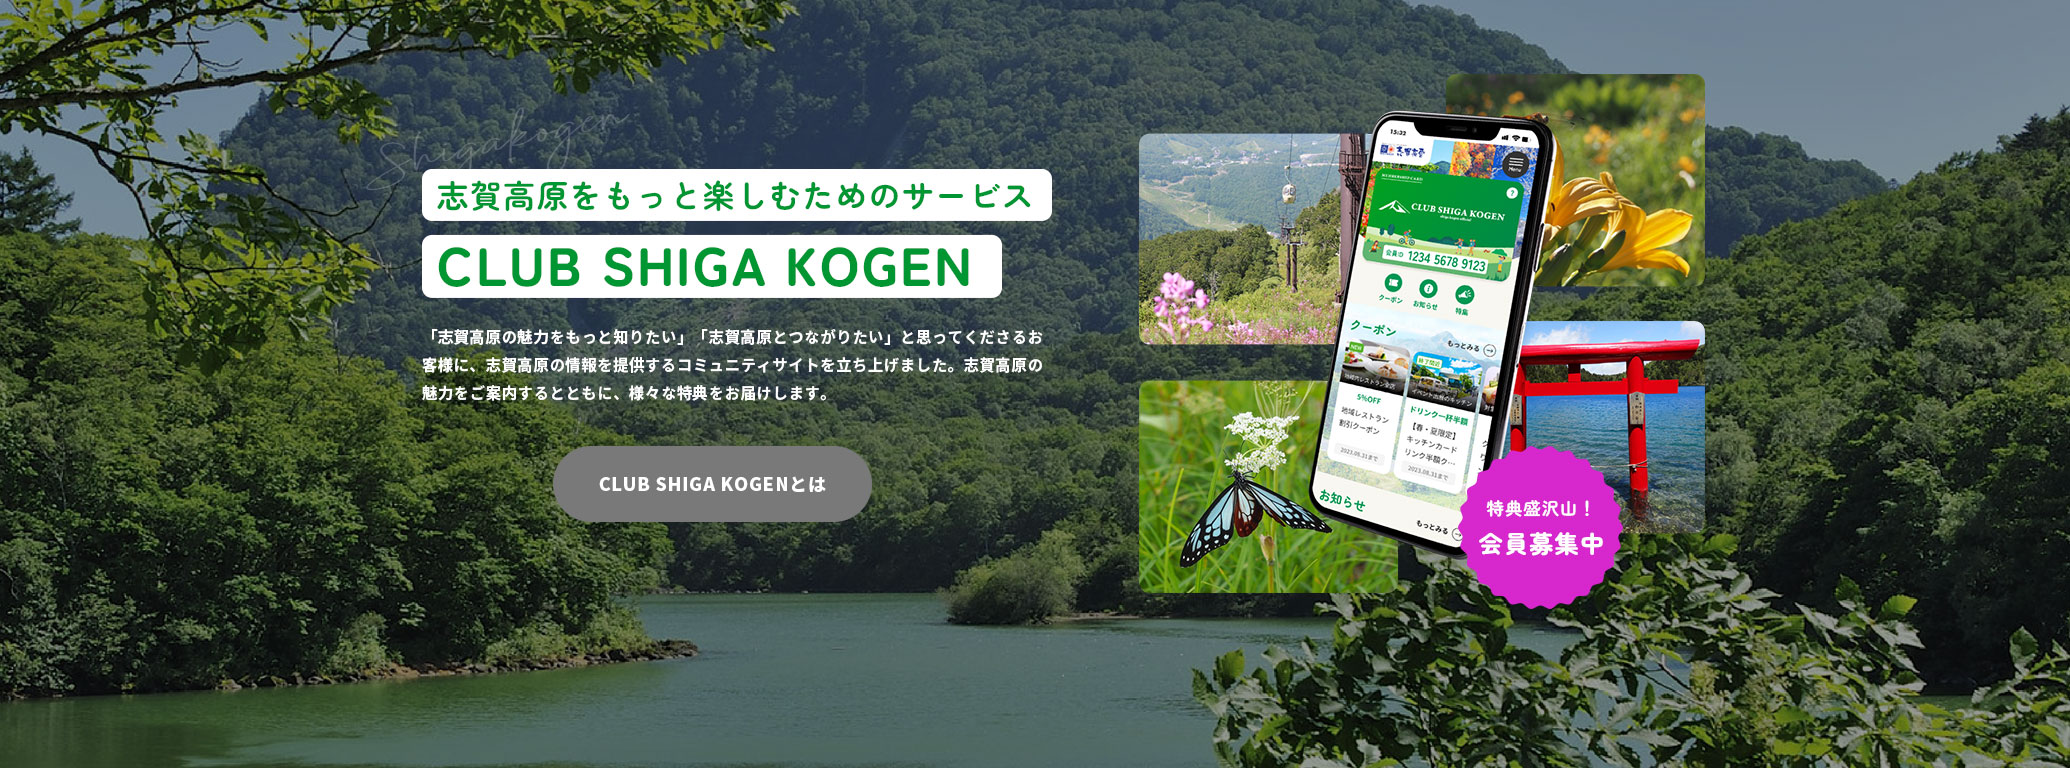 志賀高原をもっと楽しむためのサービス CLUB SHIGA KOGEN